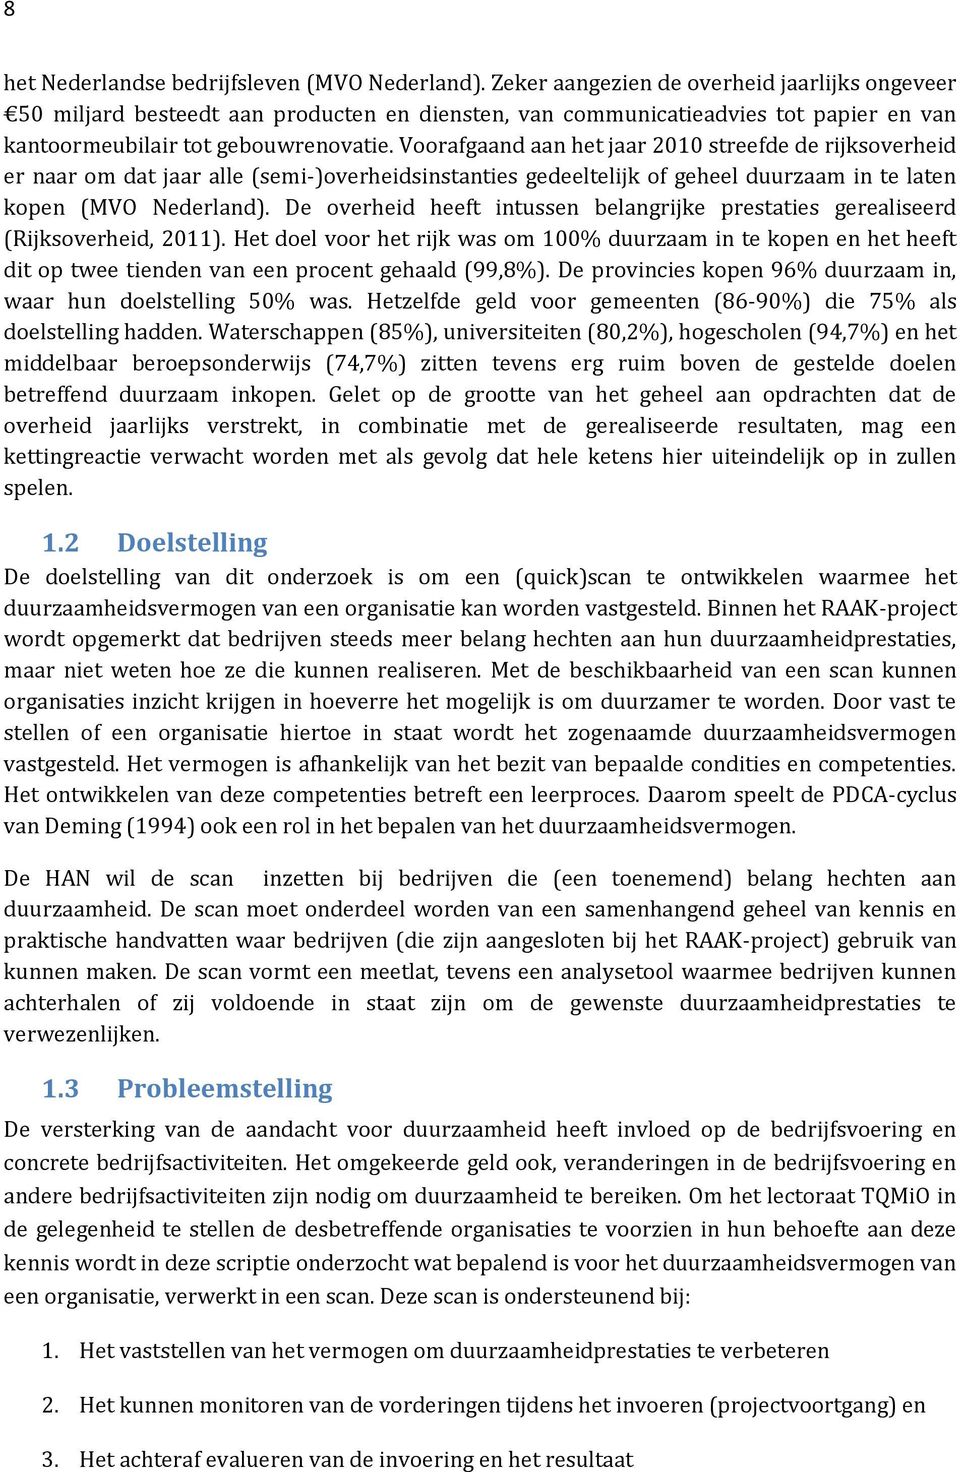 Voorafgaand aan het jaar 2010 streefde de rijksoverheid er naar om dat jaar alle (semi-)overheidsinstanties gedeeltelijk of geheel duurzaam in te laten kopen (MVO Nederland).